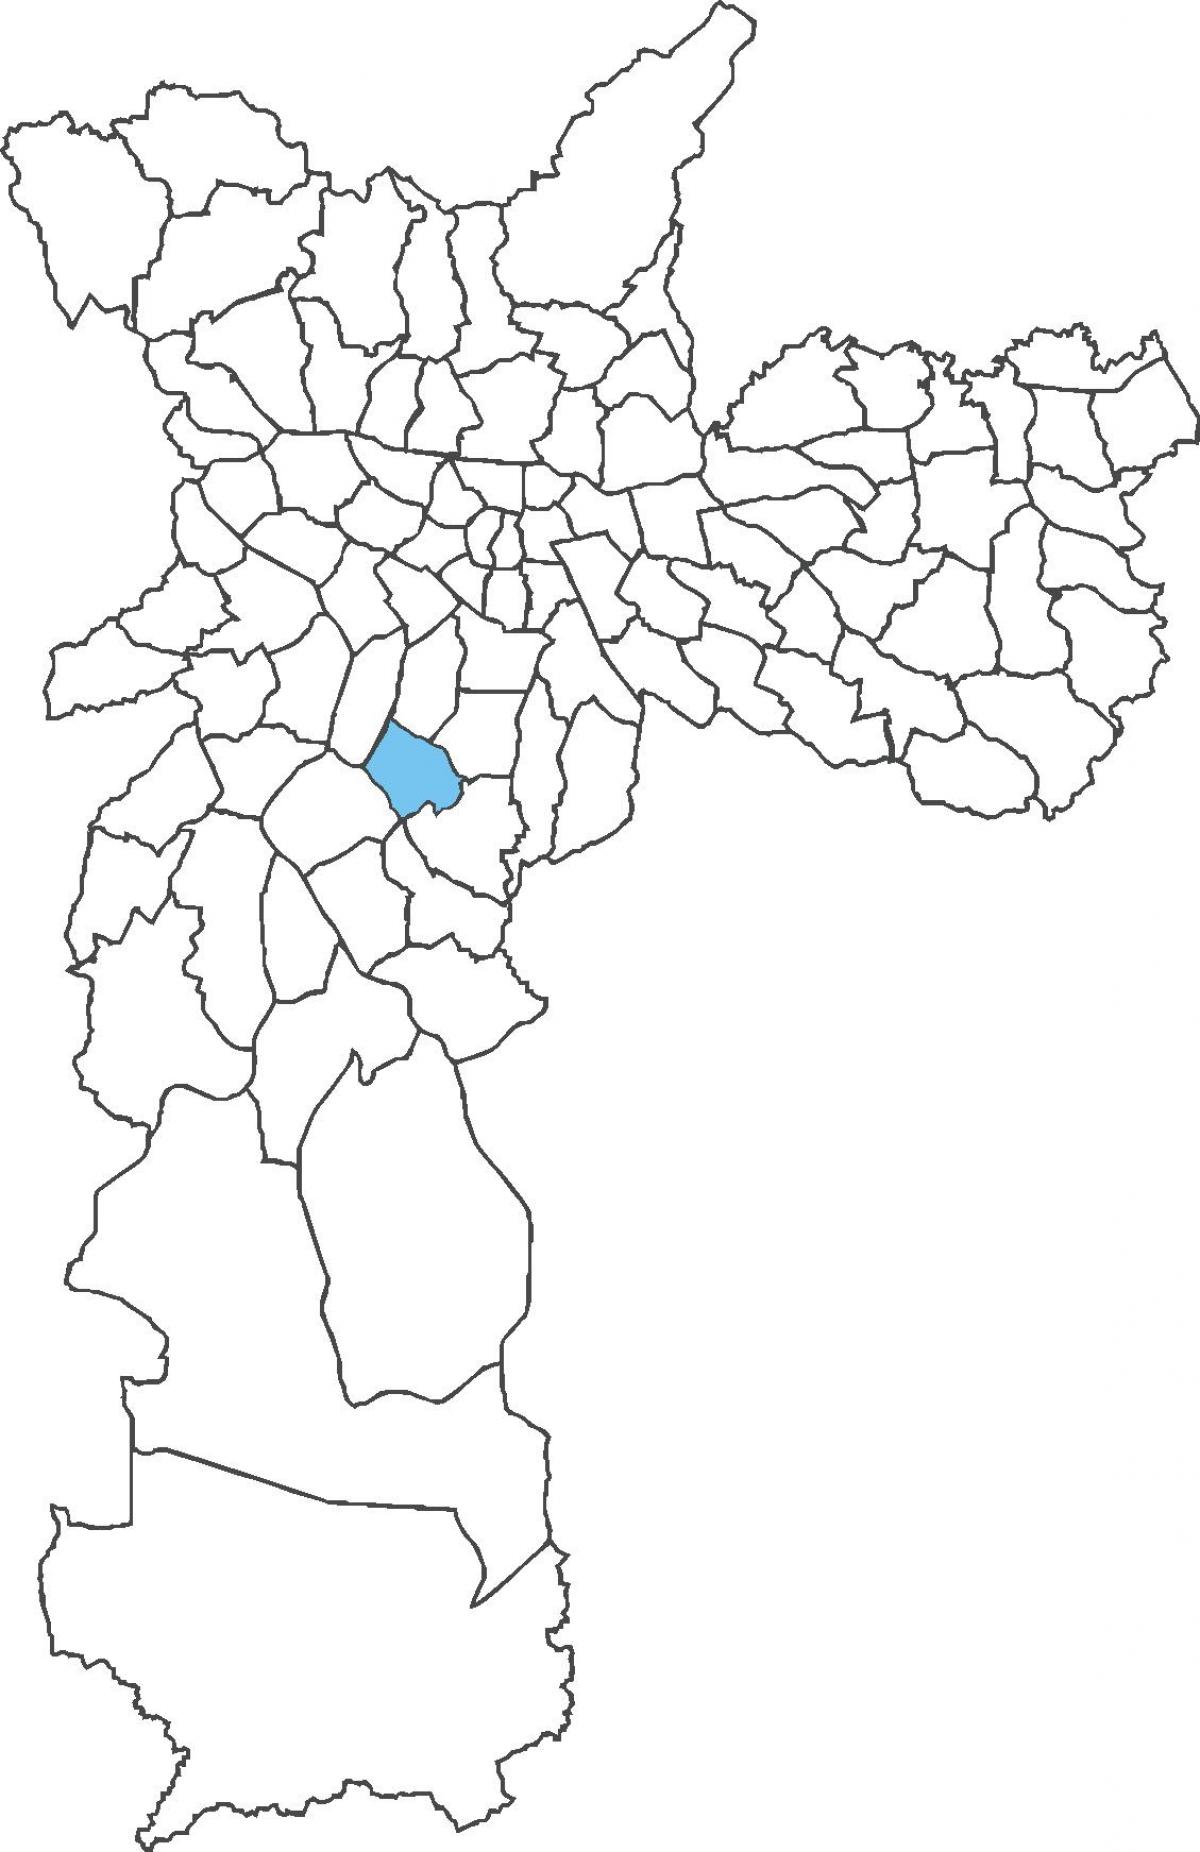 Карта Кампу-Бэлу раён